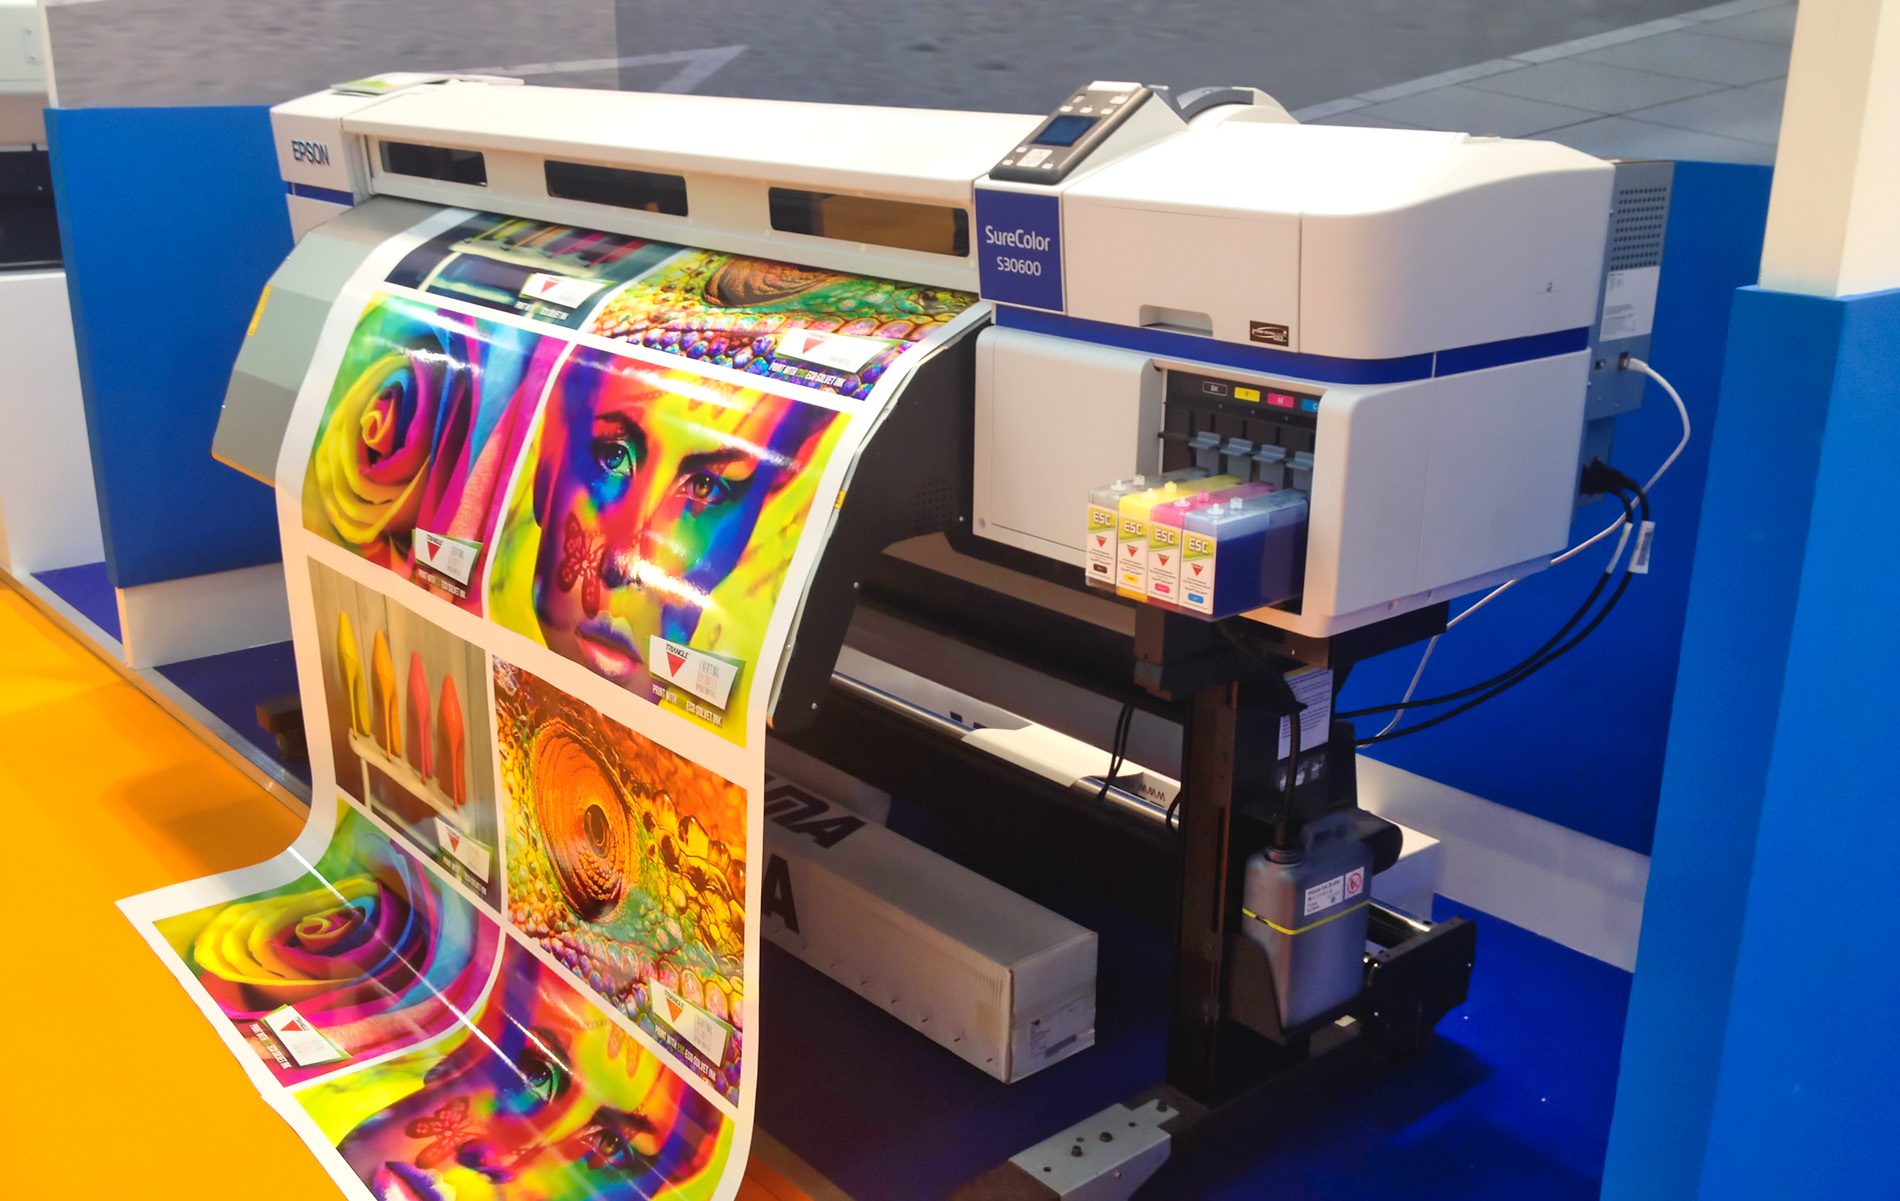 Solche Profi-Tintenstrahldrucker haben natürlich nicht mit den gleichen Problemen zu kämpfen, wie die Billig-Drucker, die meistens an Privatkunden verkauft werden.